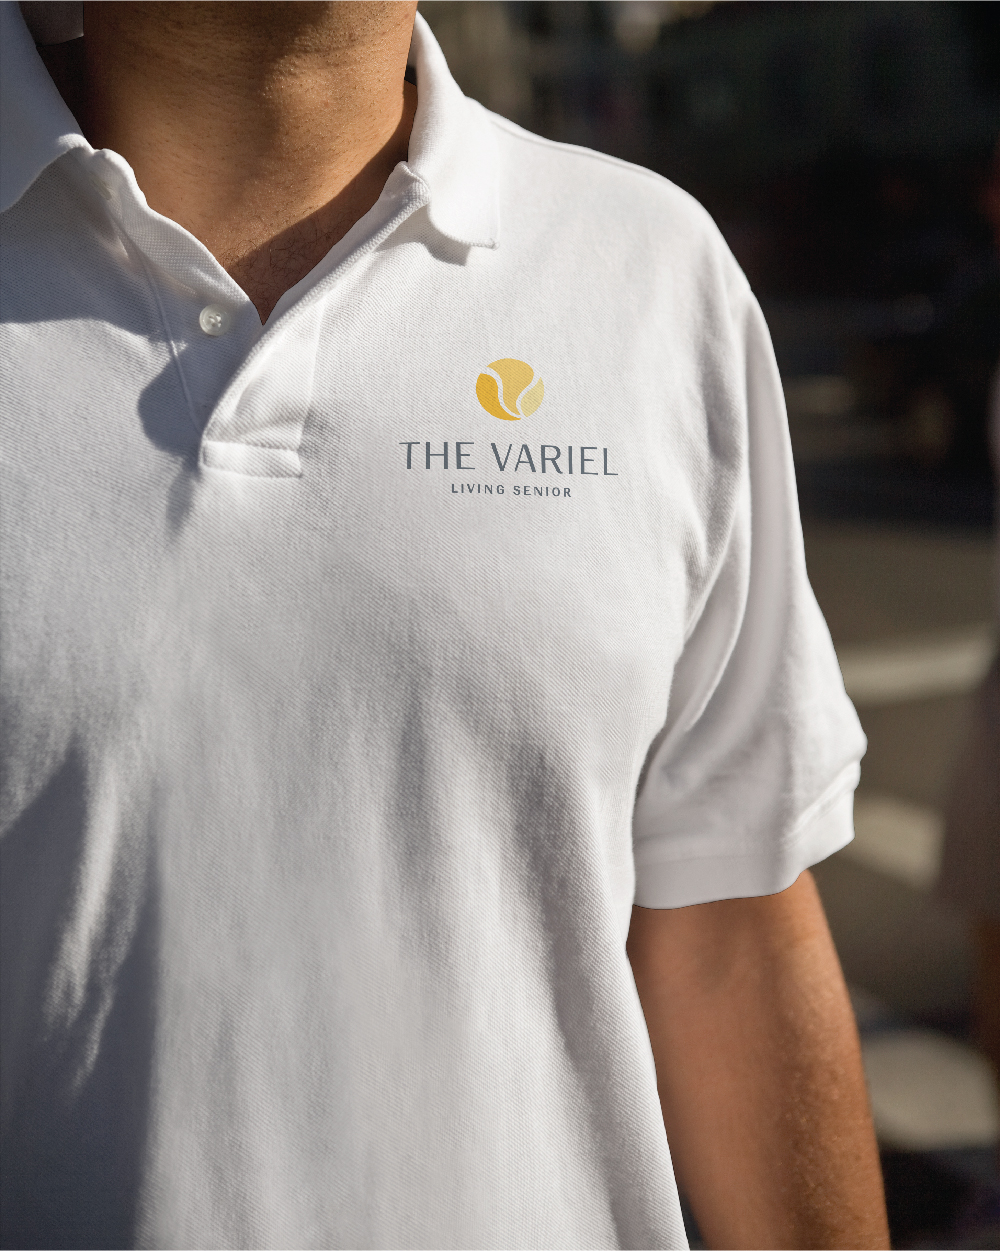 The Variel Tshirt